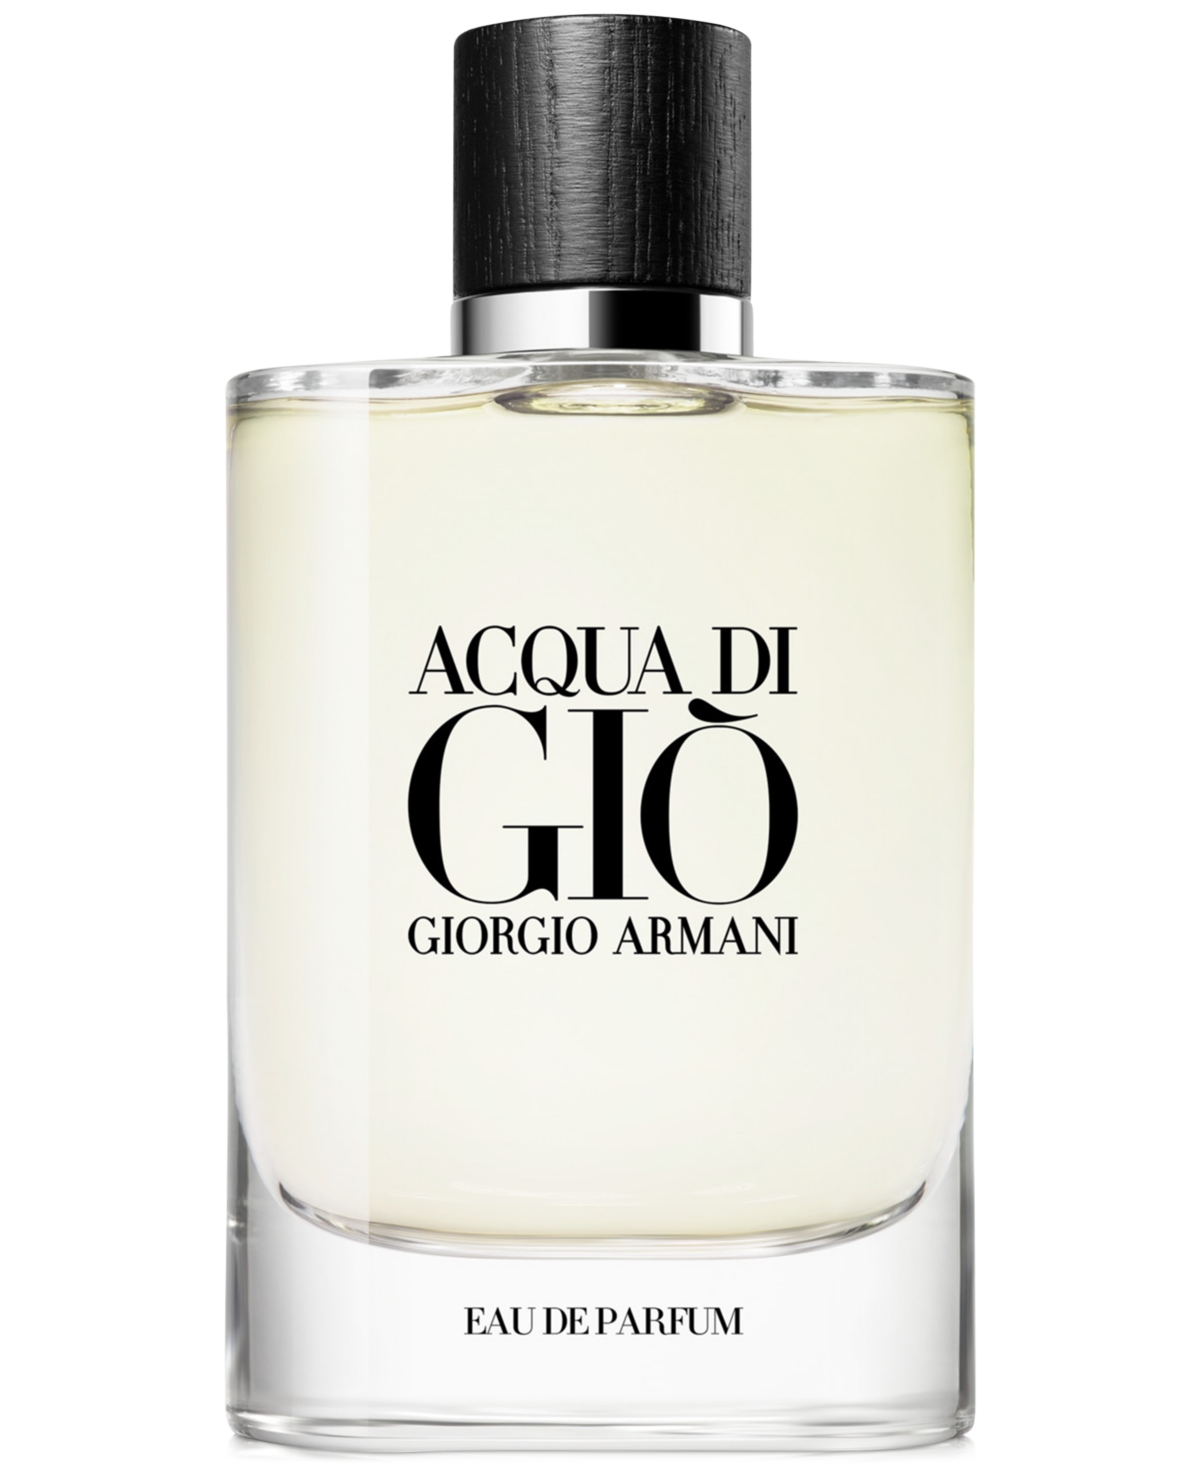 Fall bolt witness Giorgio Armani Men's Acqua di Giò Eau de Parfum Spray, 6.7 oz. & Reviews -  Cologne - Beauty - Macy's